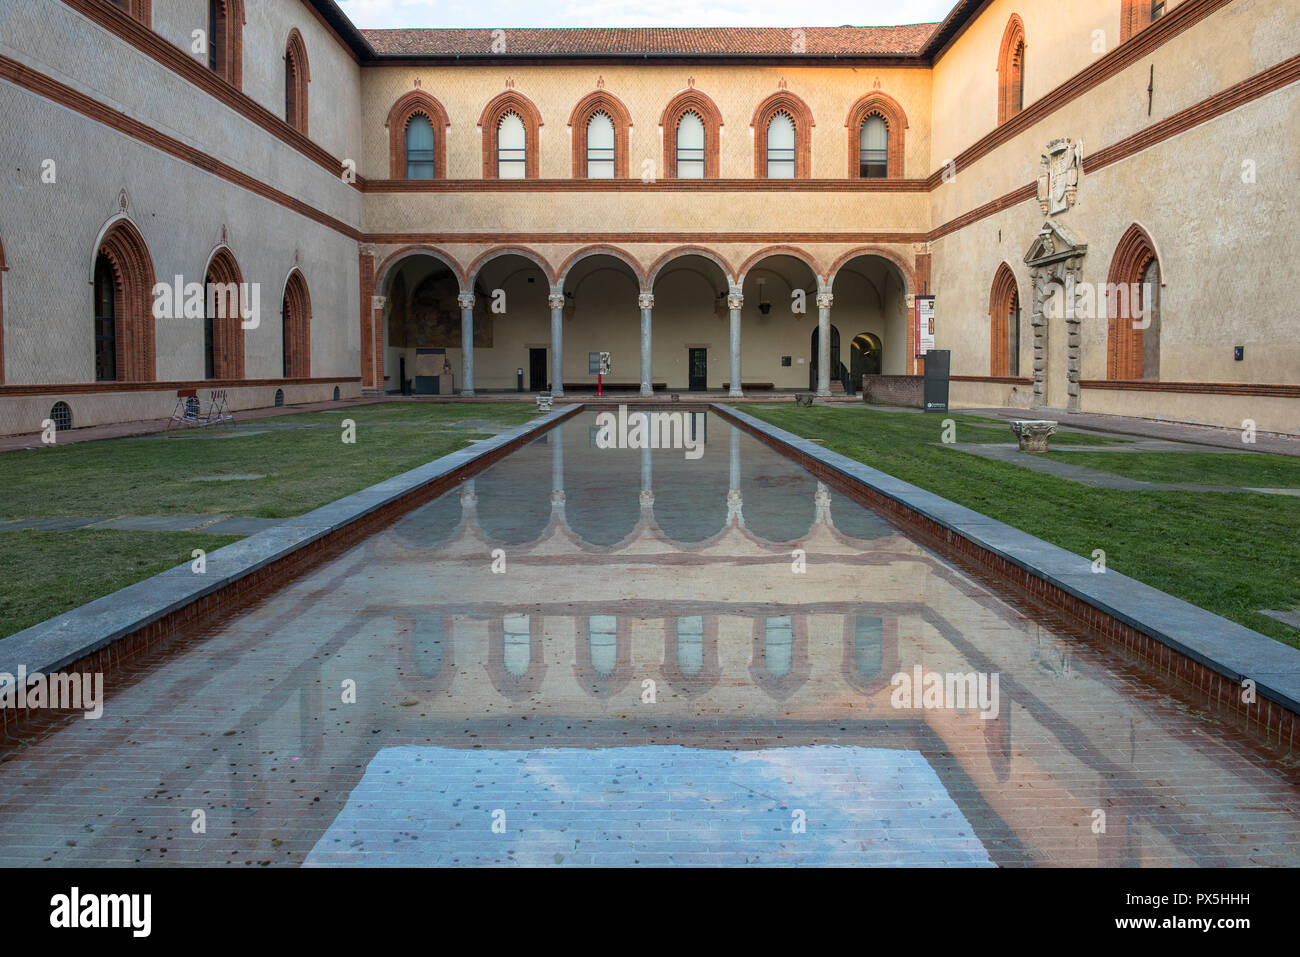 Corte Ducale, Sforza castle, Milan, Italy. Stock Photo